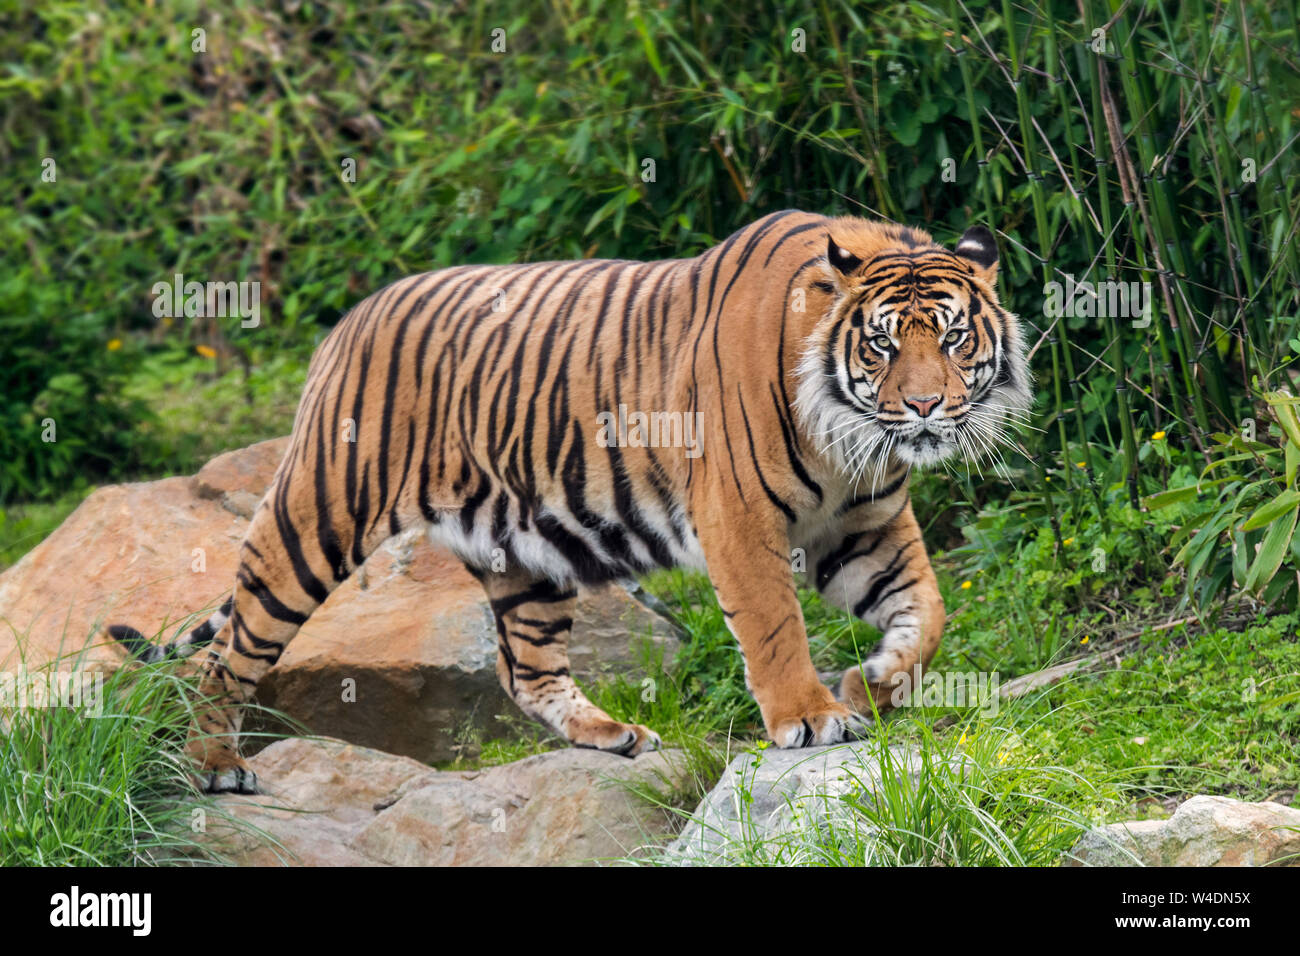 Sumatra-tiger (Panthera tigris sondaica) wandern im Wald, native auf der indonesischen Insel Sumatra, Indonesien Stockfoto